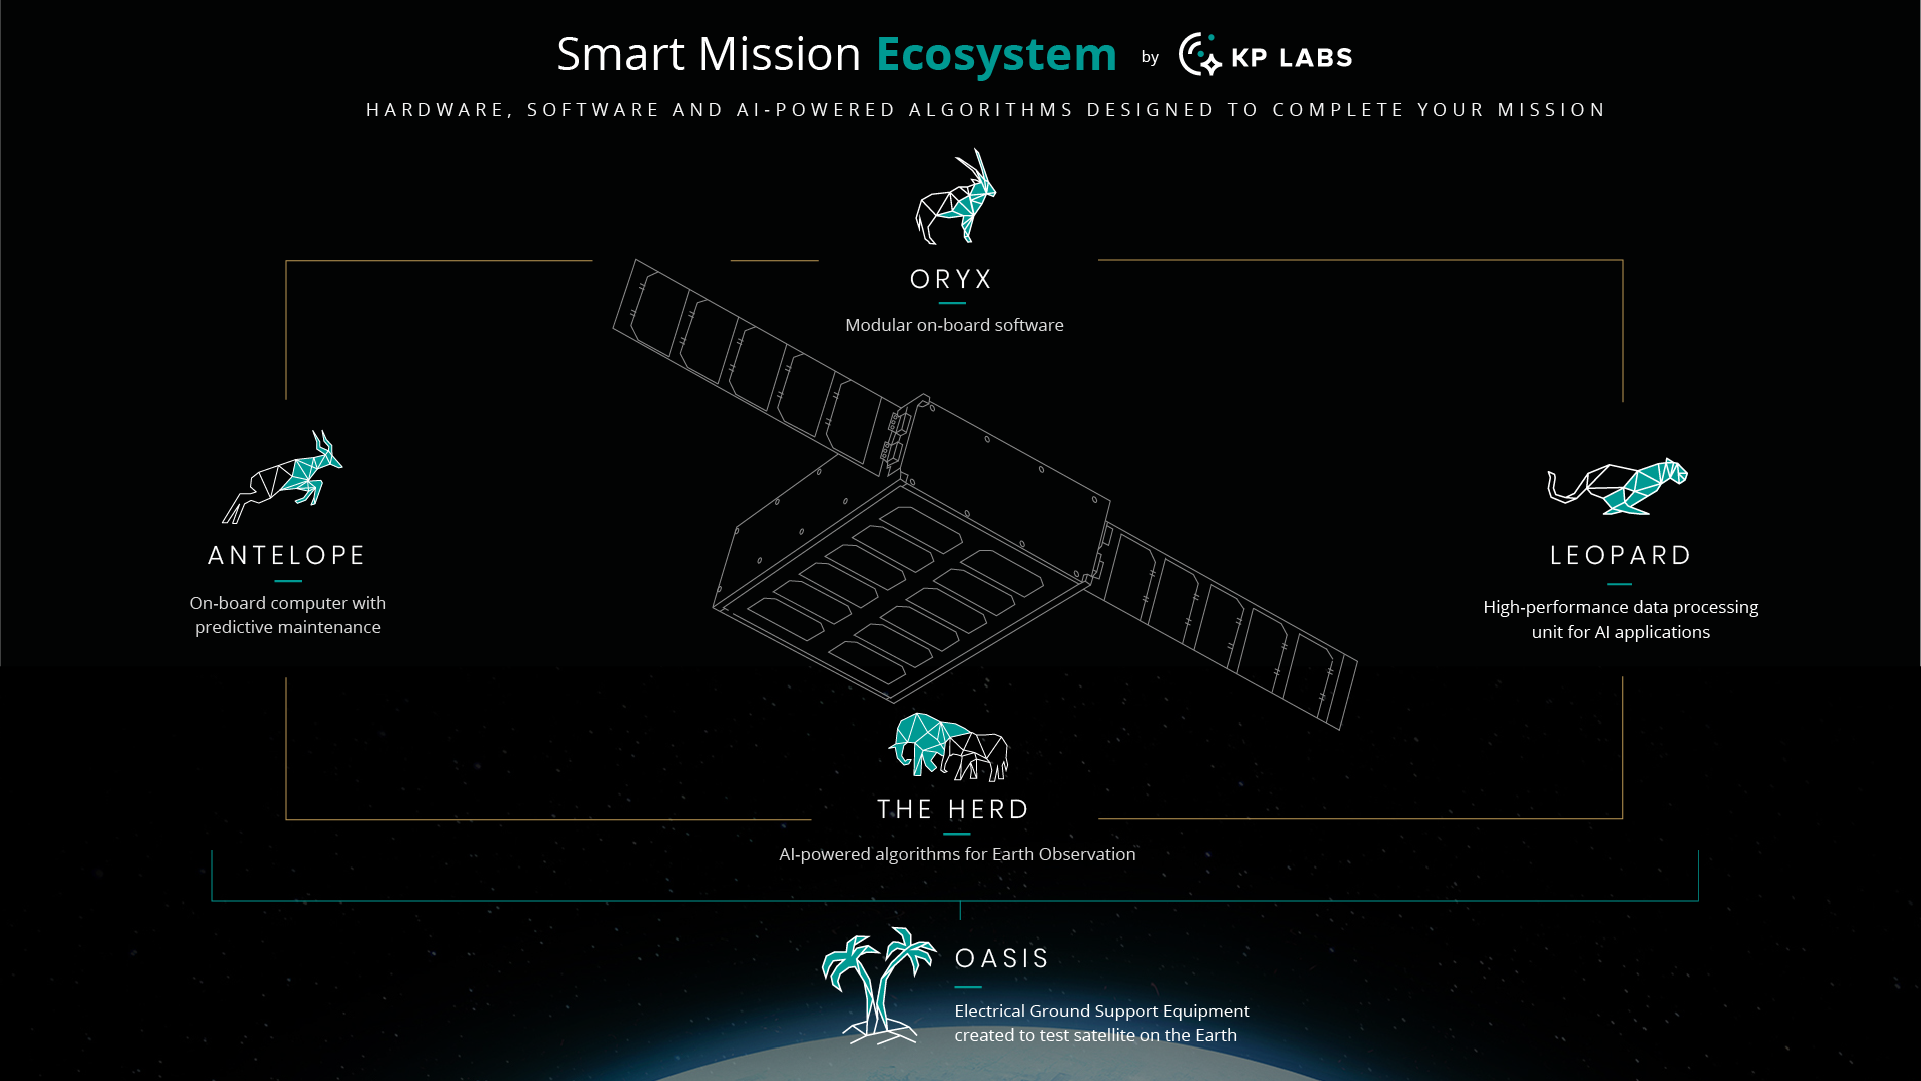 Smart Mission Ecosystem - zbiór algorytmów, oprogramowania i sprzętu satelitarnego, obniżającego koszty operacyjne misji oraz redukujący czas reakcji na zdarzenia, dzięki czemu przestrzeń kosmiczna będzie bardziej dostępna.